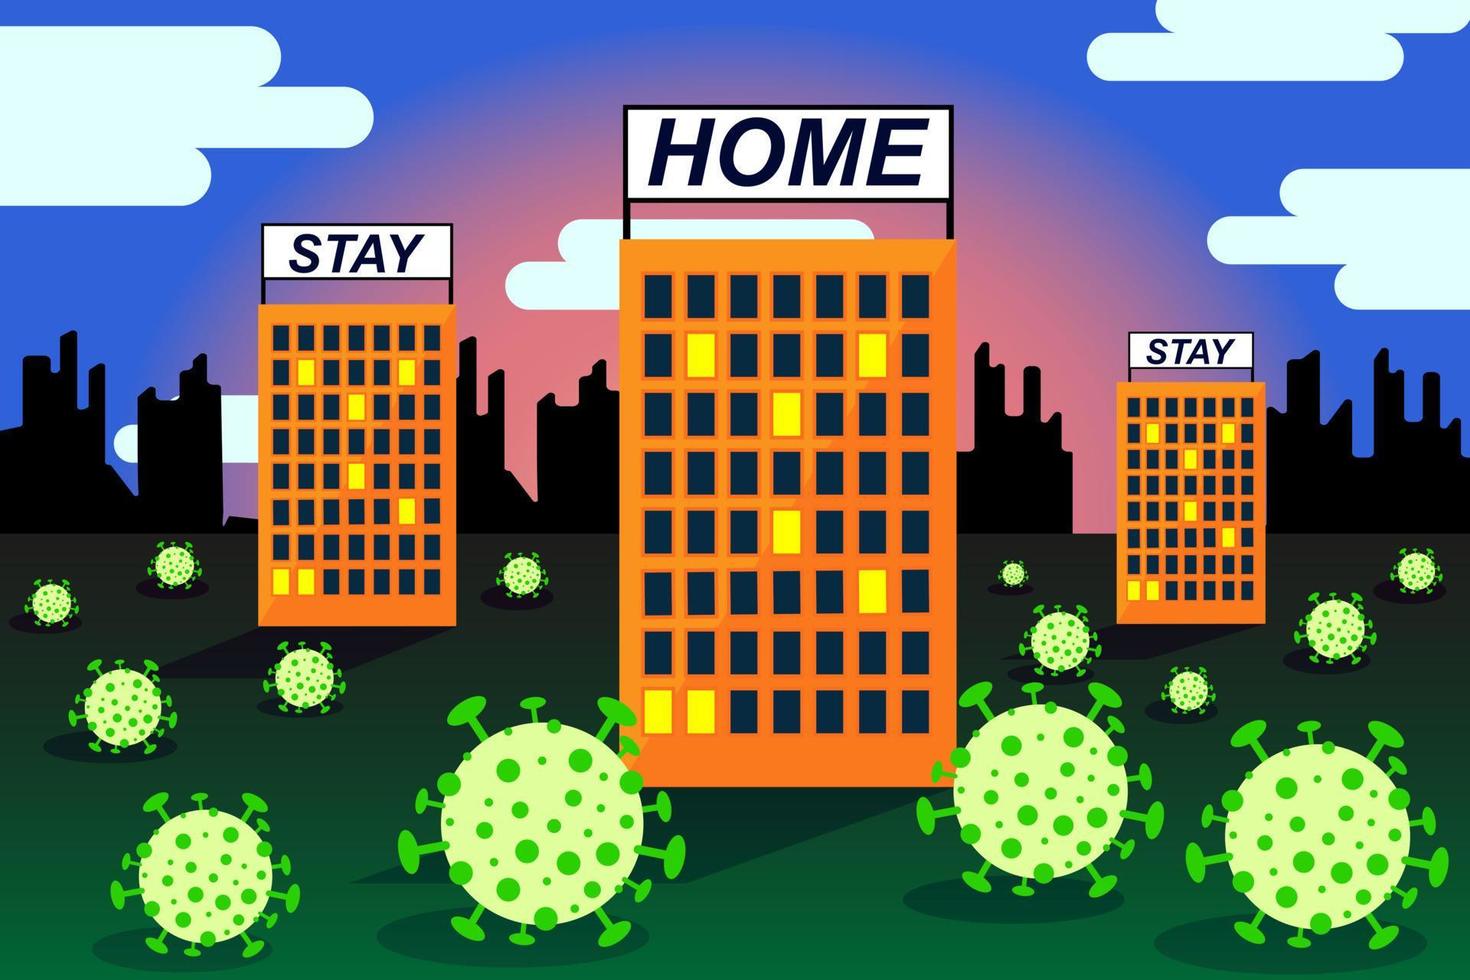 paisaje con la imagen de virus que rodean edificios de varios pisos. en los techos de los edificios hay pancartas llamando a quedarse en casa. vector